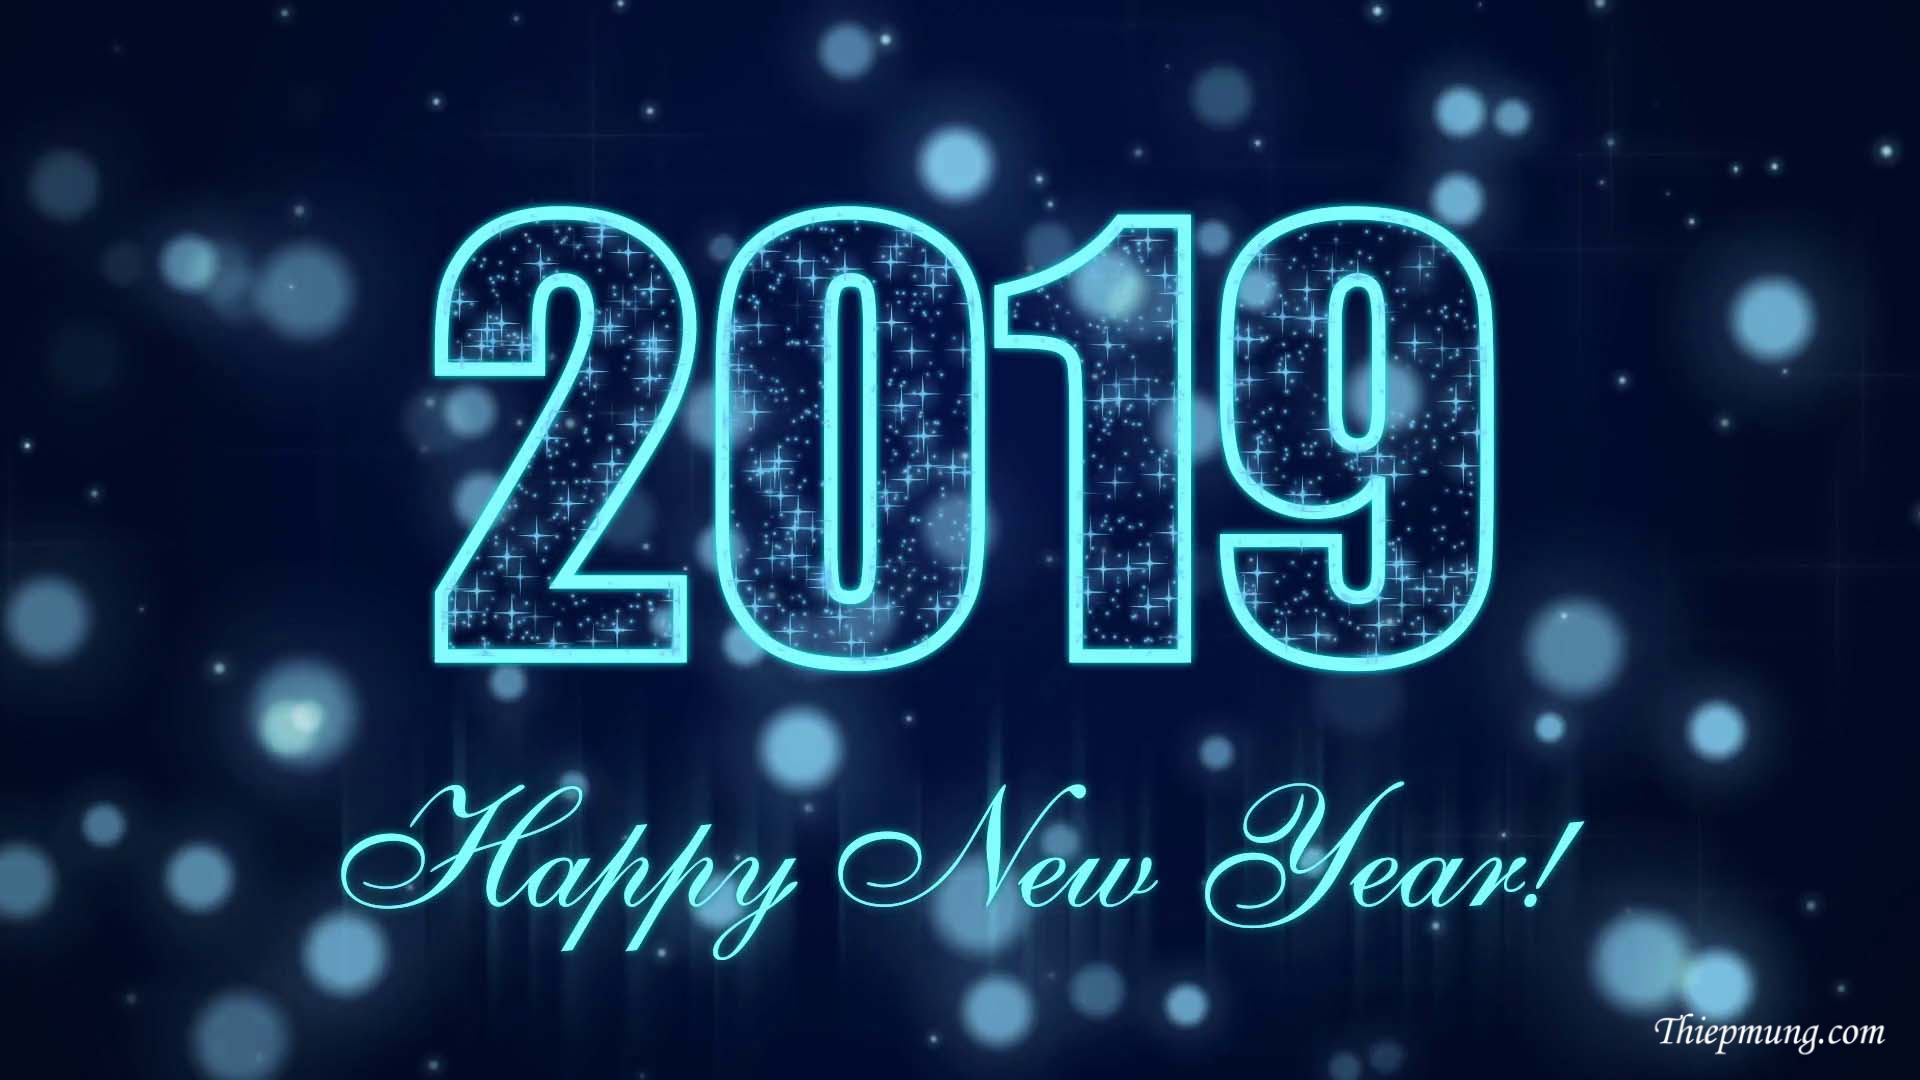 Thiệp mừng năm mới 2019 đẹp nhất - Hình 2